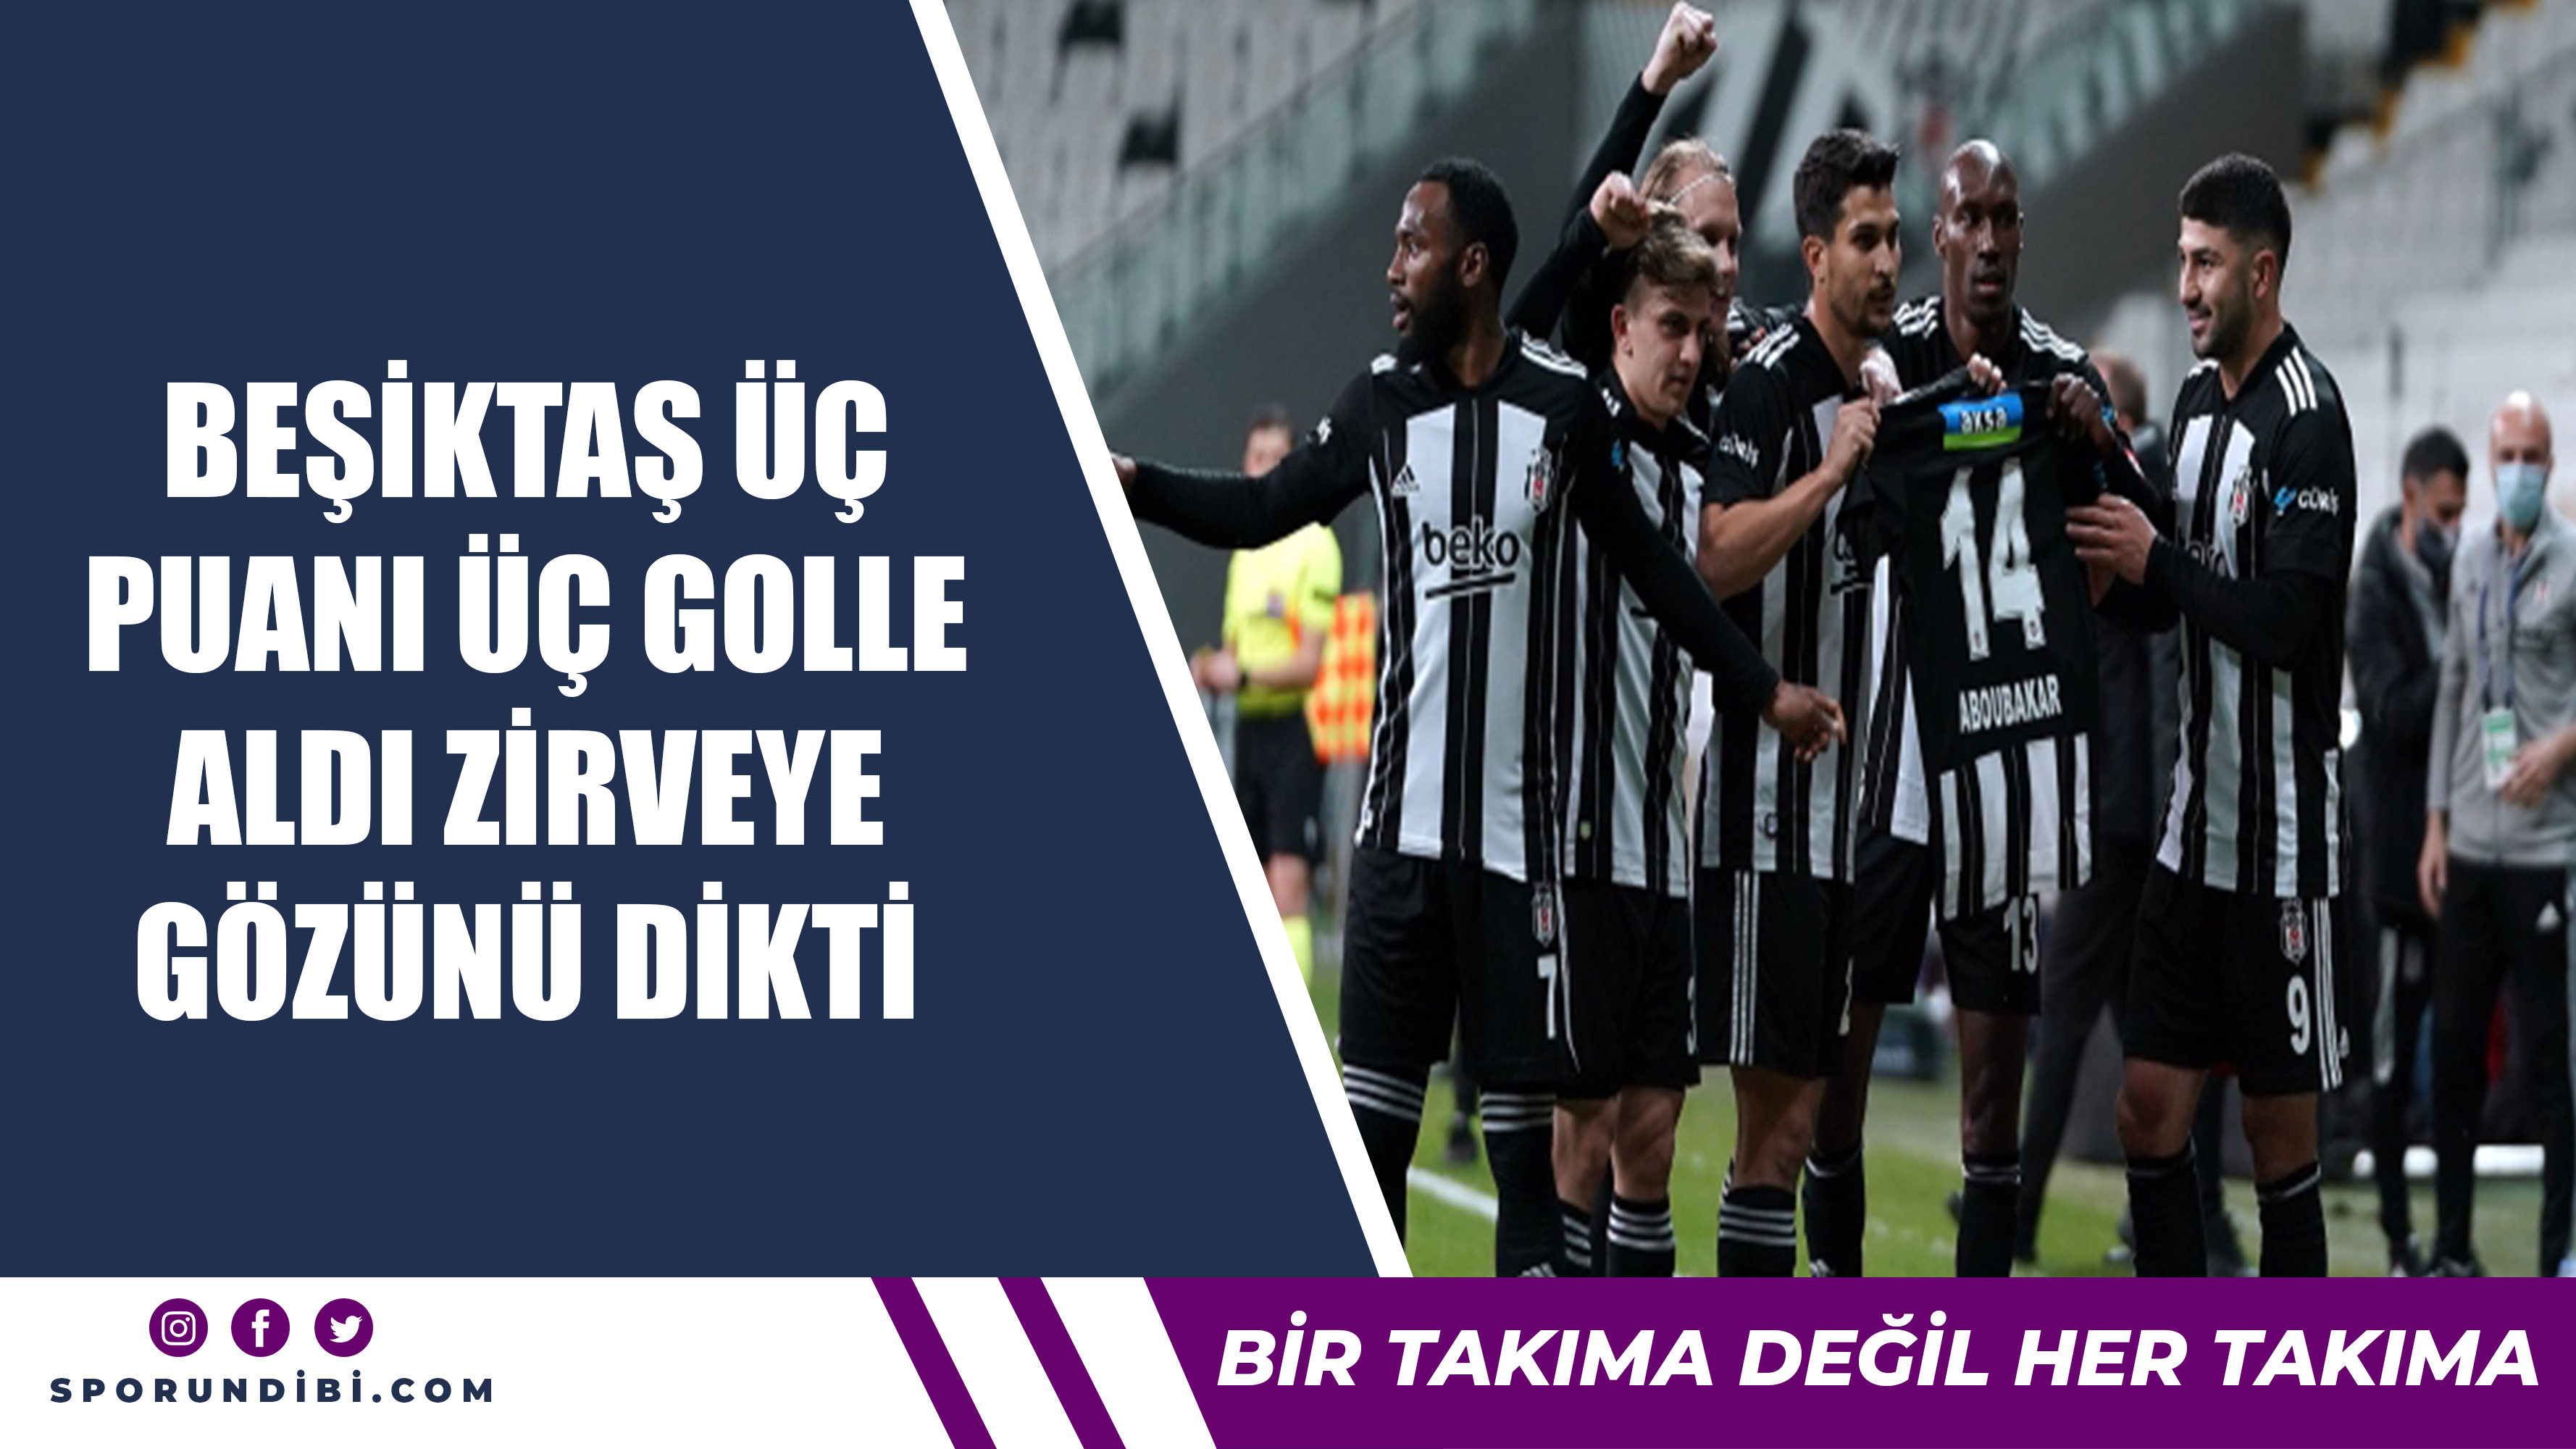 Beşiktaş 3 puanı 3 golle aldı 2.ci sıraya yerleşti.